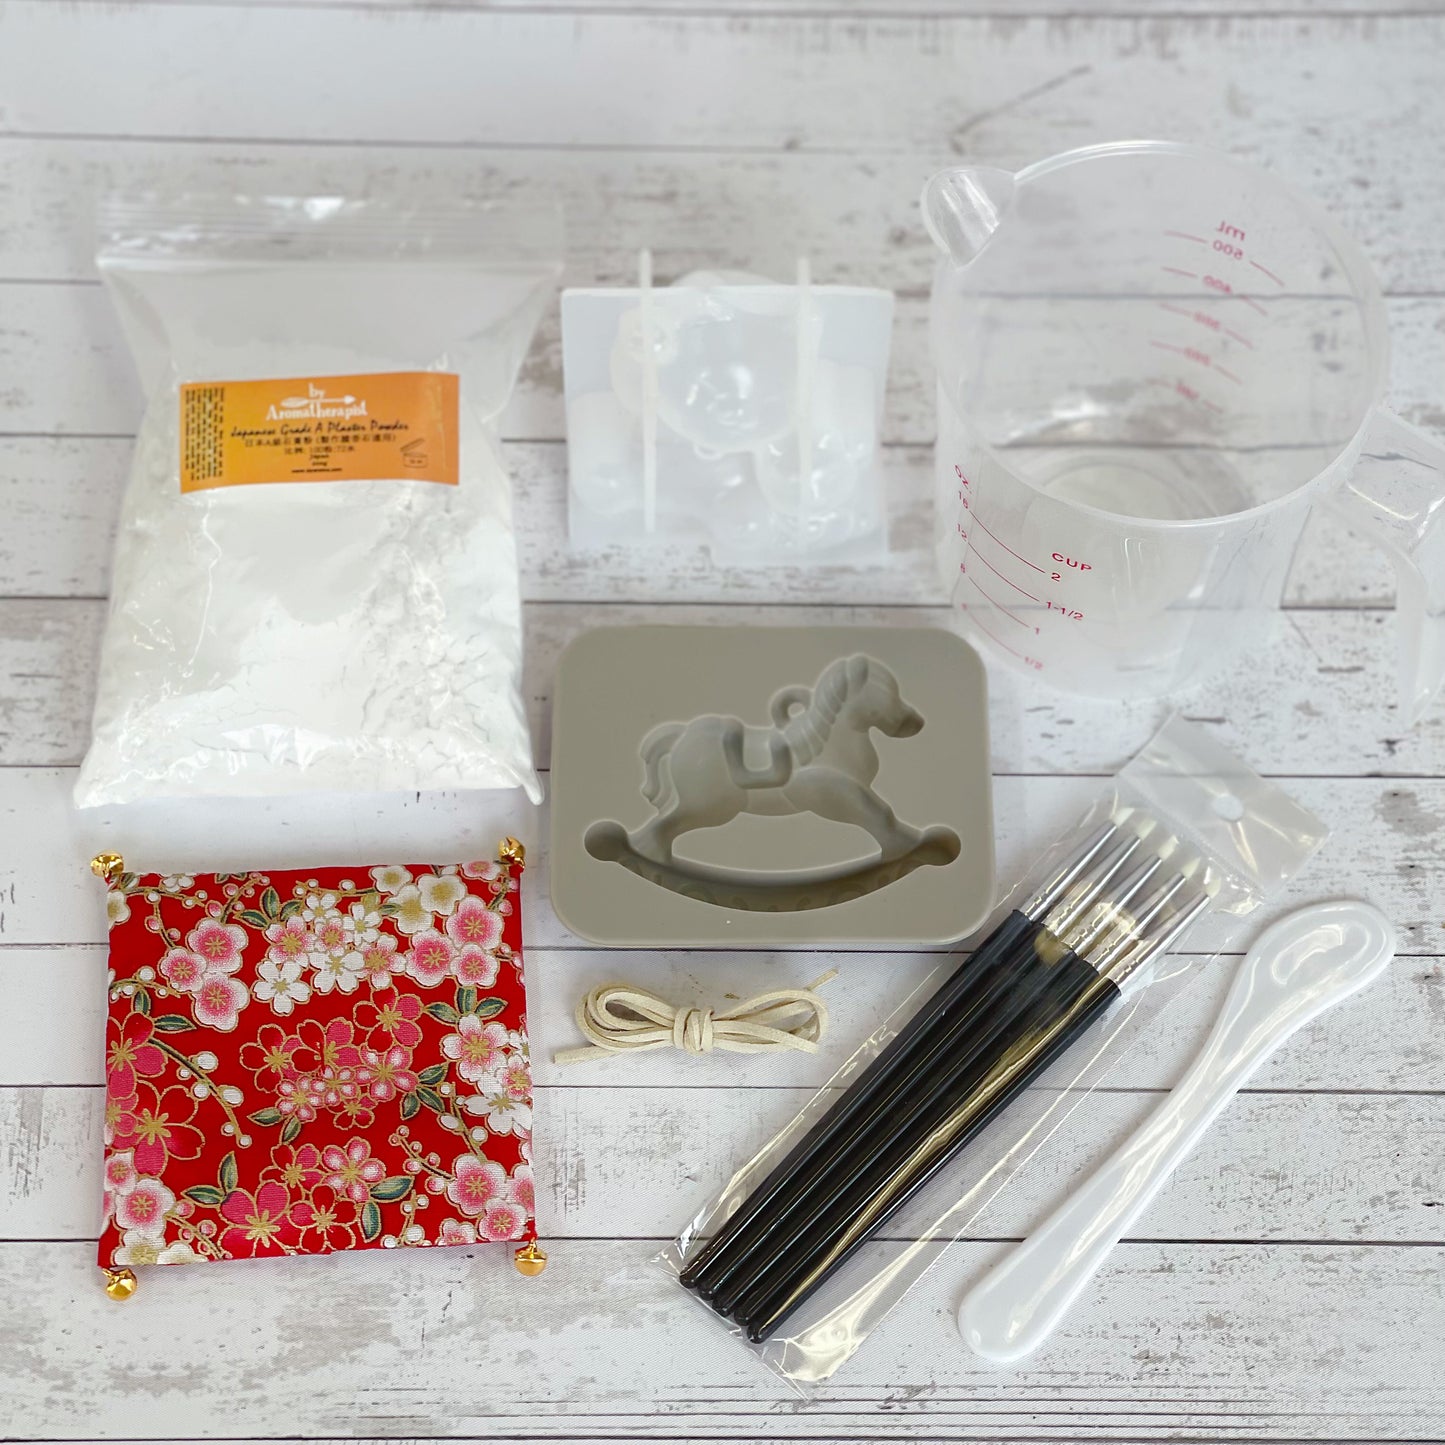 Aroma Stone Tools & Ingredients Package 香薰擴香石工具及材料套裝